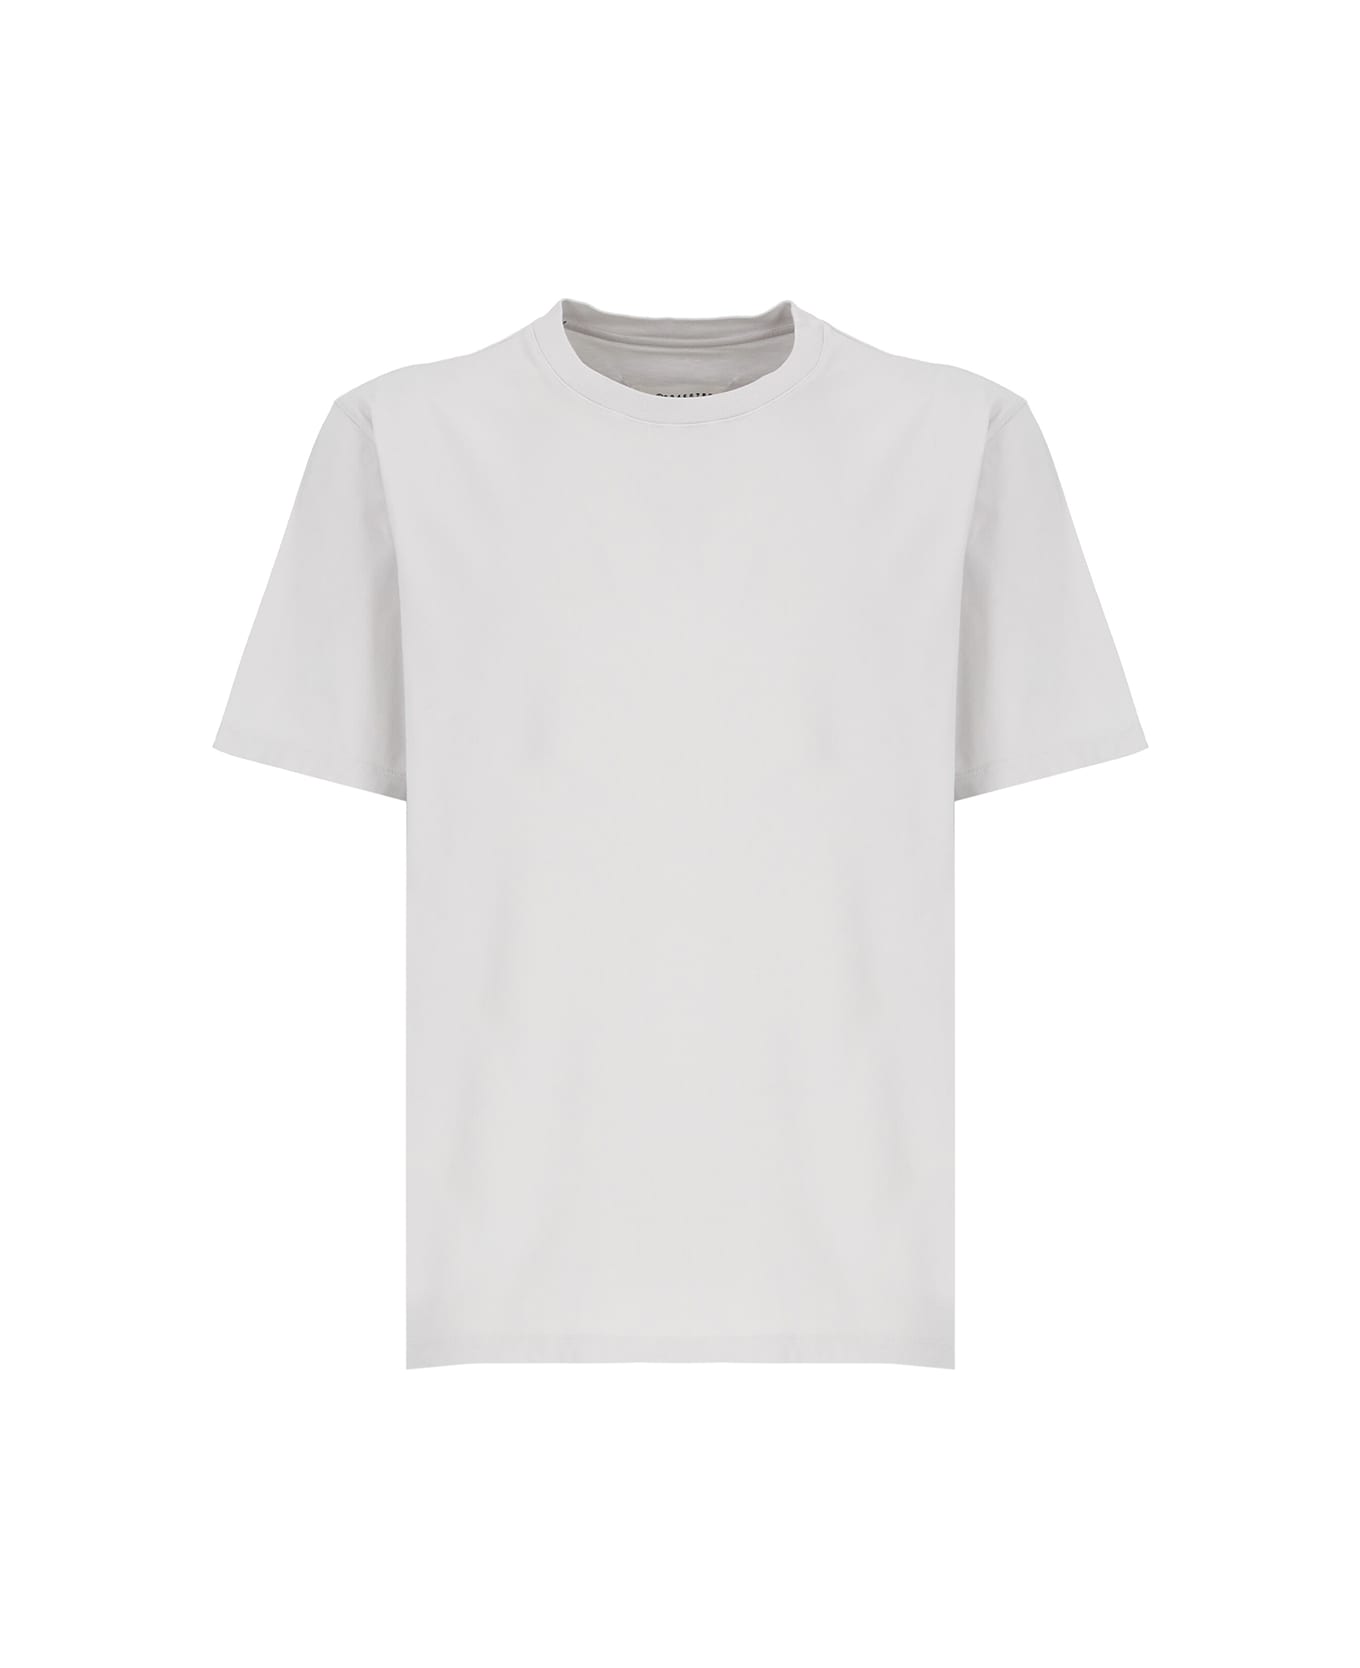 Maison Margiela Short-sleeved Crewneck T-shirt - Grey